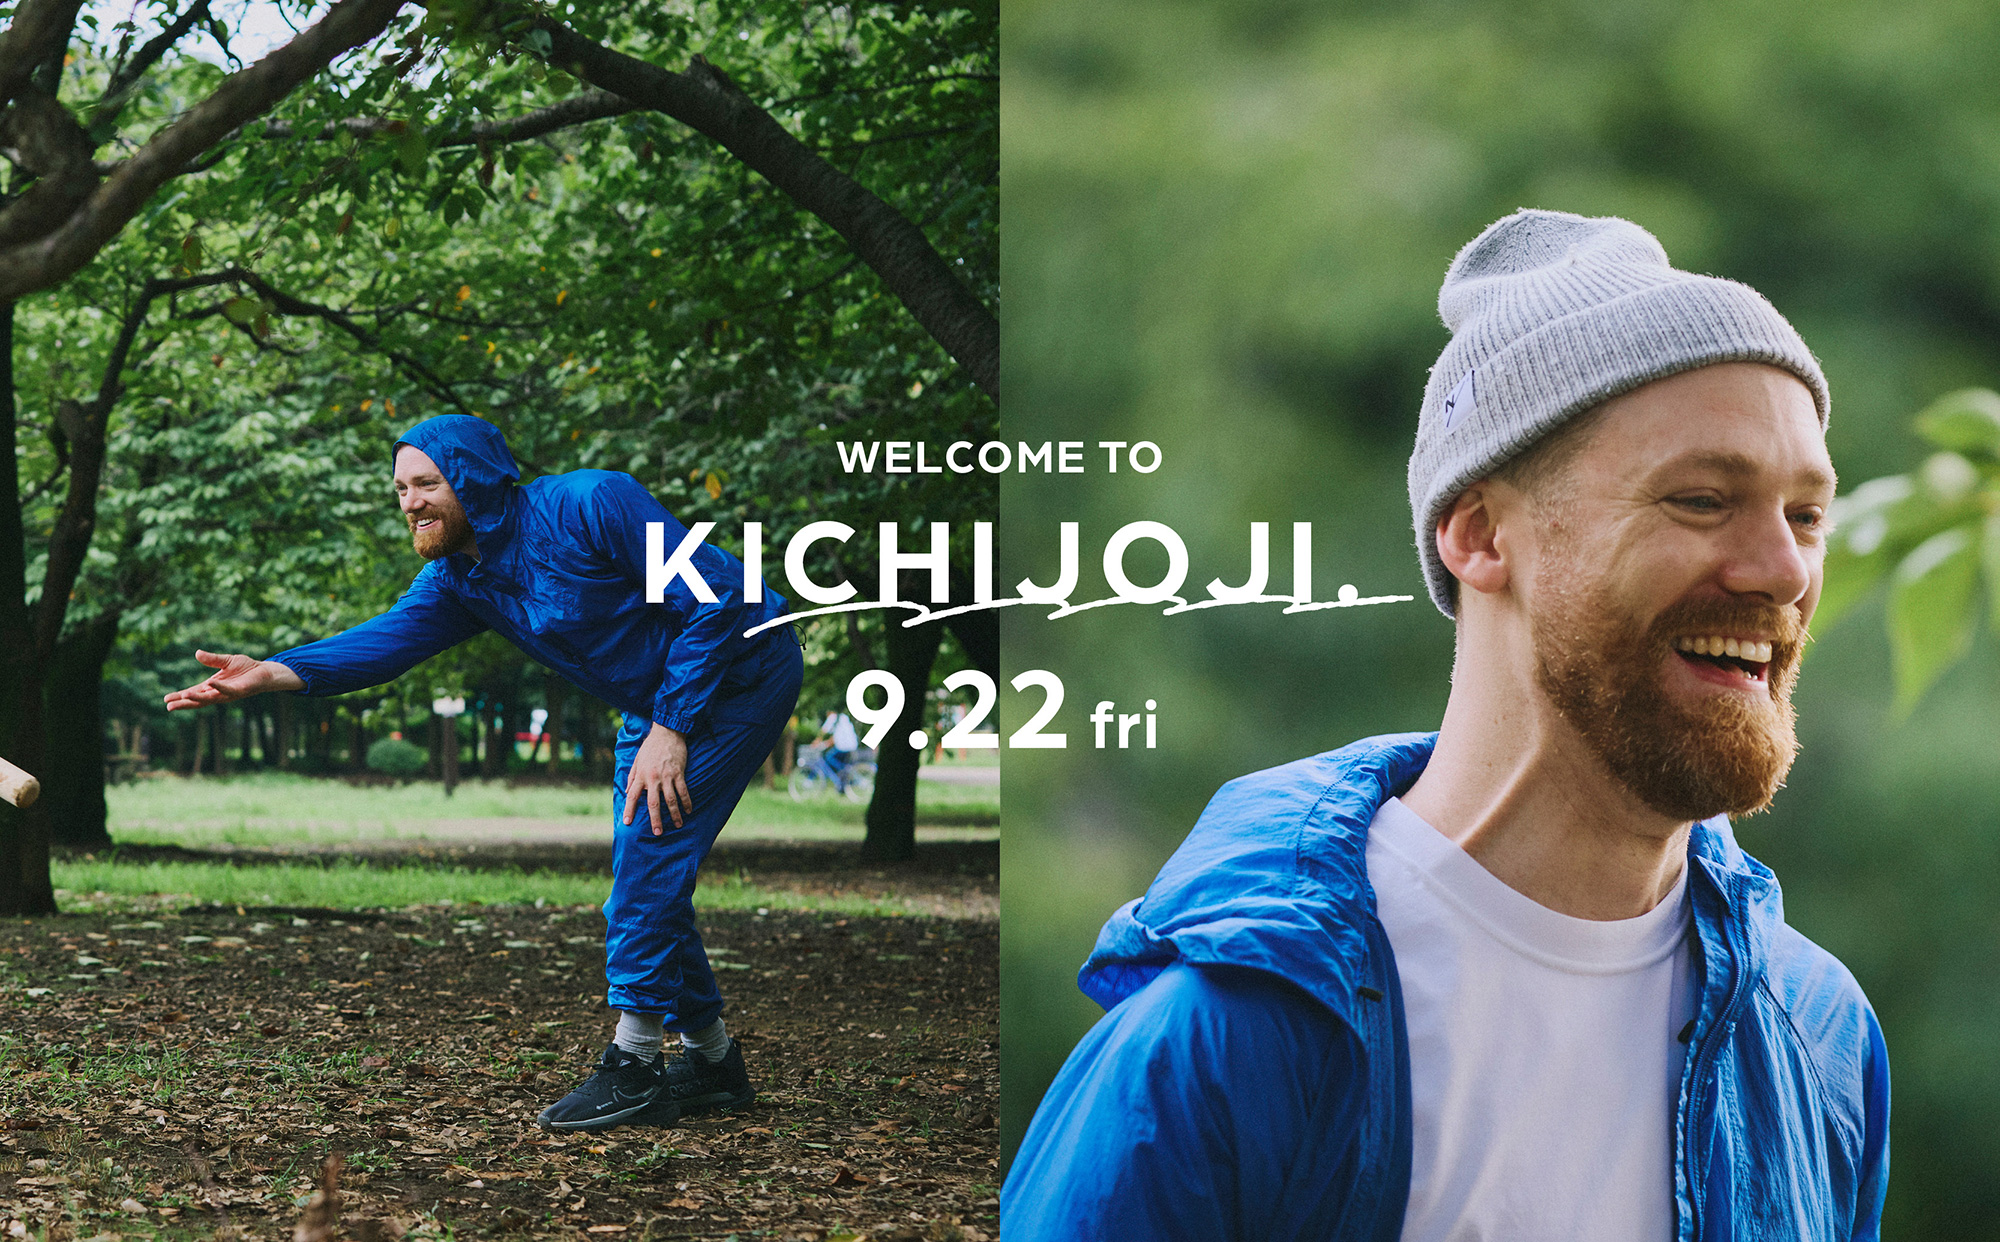 WELCOME TO KICHIJOJI. #1 FUN “PLAY IN THE PARK.”